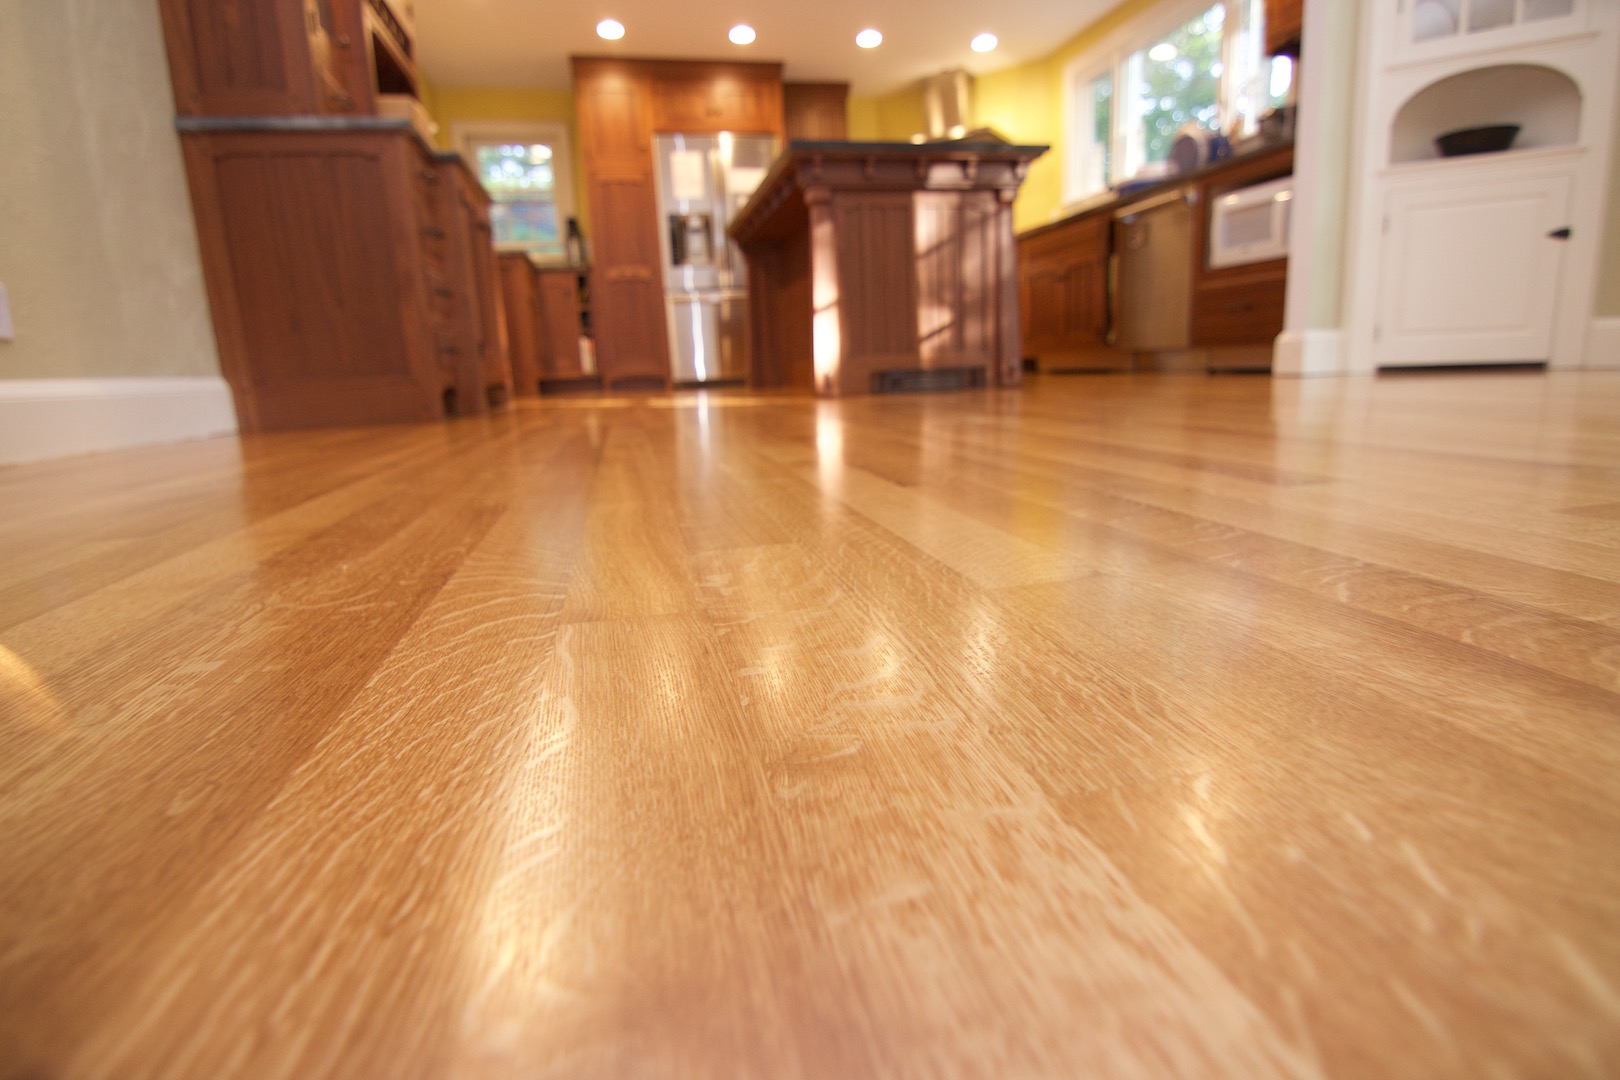 Polyurethane Wood Floor Finish How To, What Polyurethane To Use On Hardwood Floors